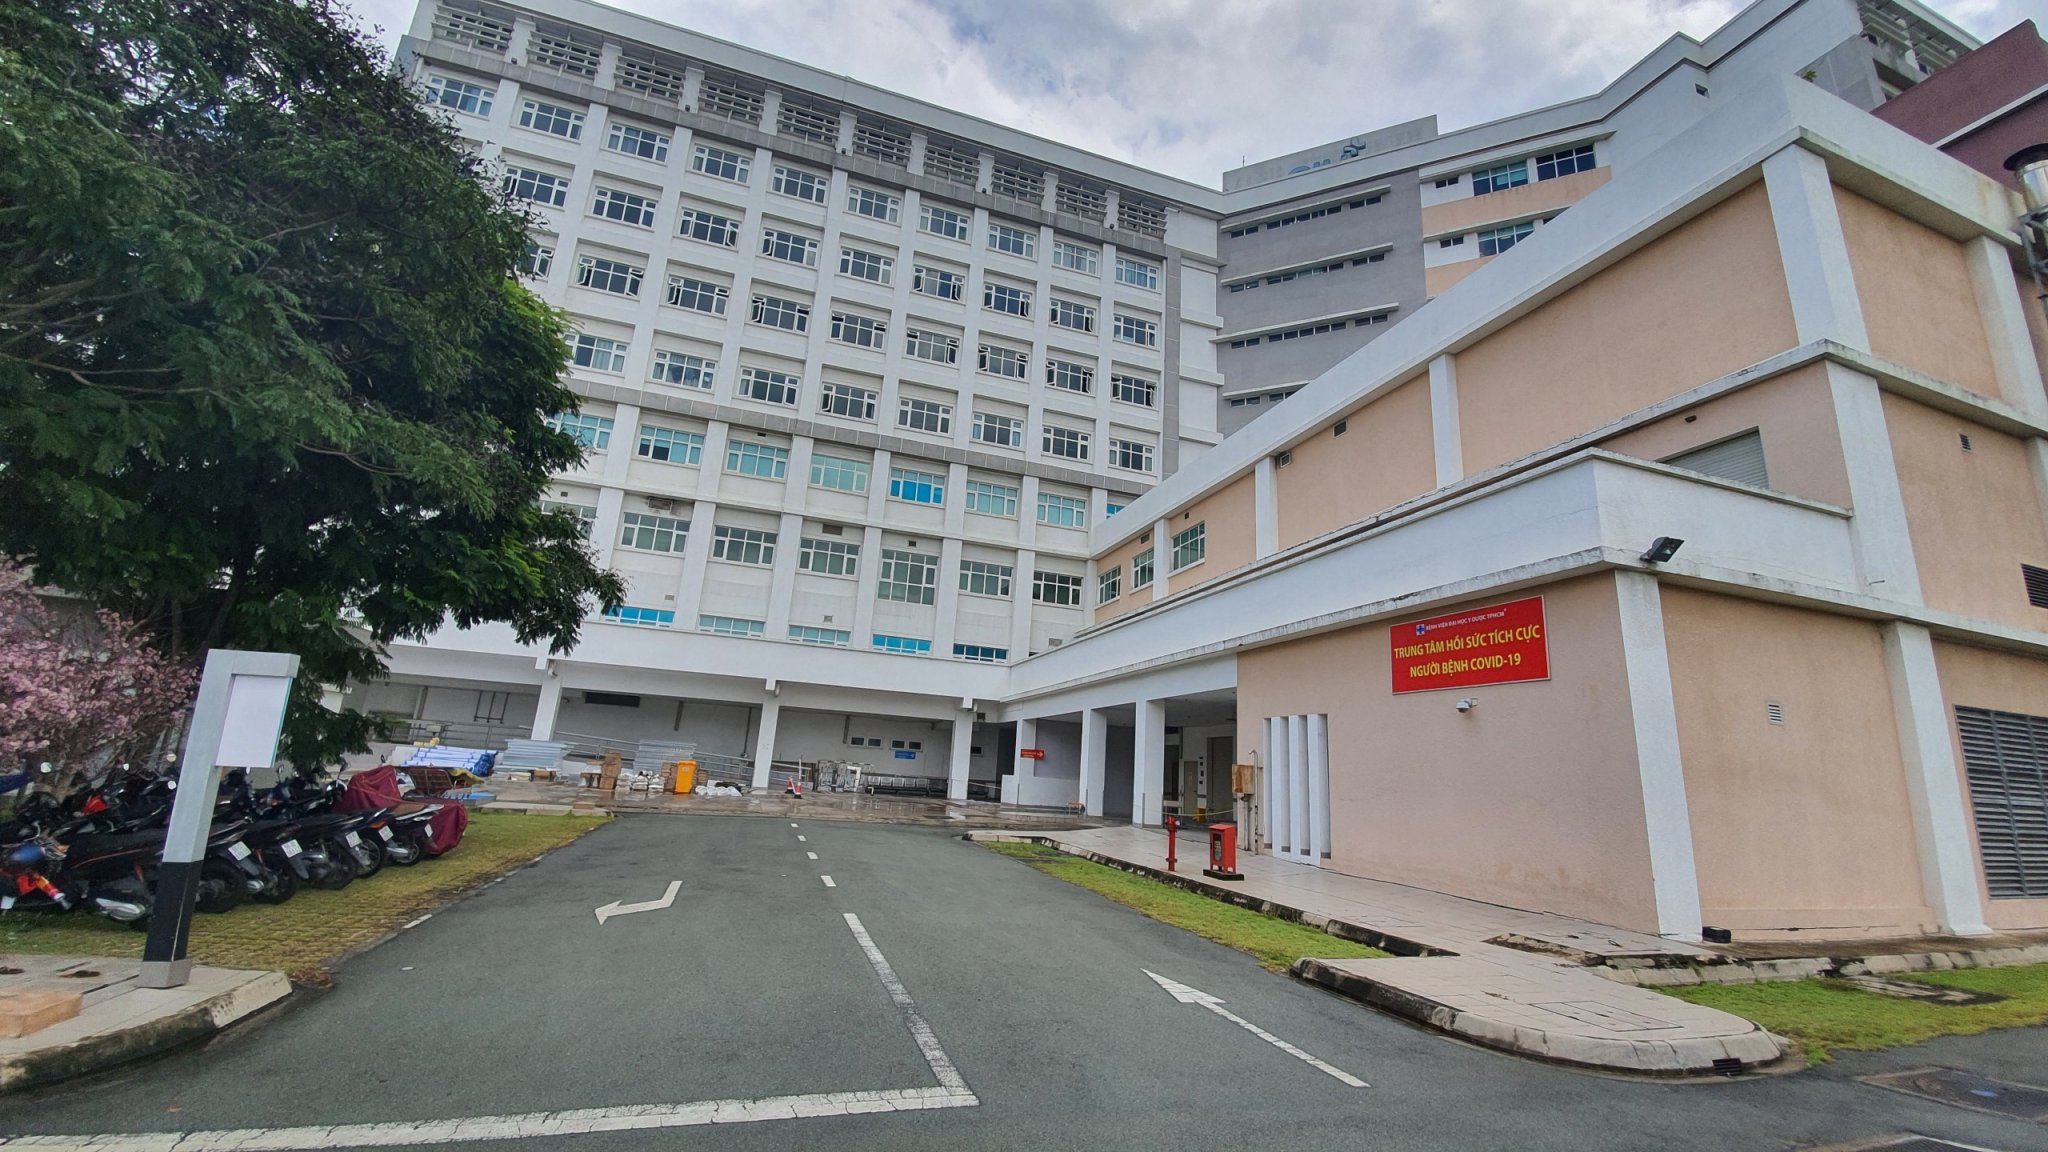 Trung tâm hồi sức tích cực người bệnh Covid-19, khu điều trị tầng cao nhất bệnh nhân nặng trực thuộc Bệnh viện Đại học Y dược TP Hồ Chí Minh tại Phường Bình Trị Đông B, Quận Bình Tân (TP.HCM) vừa được chính bàn giao